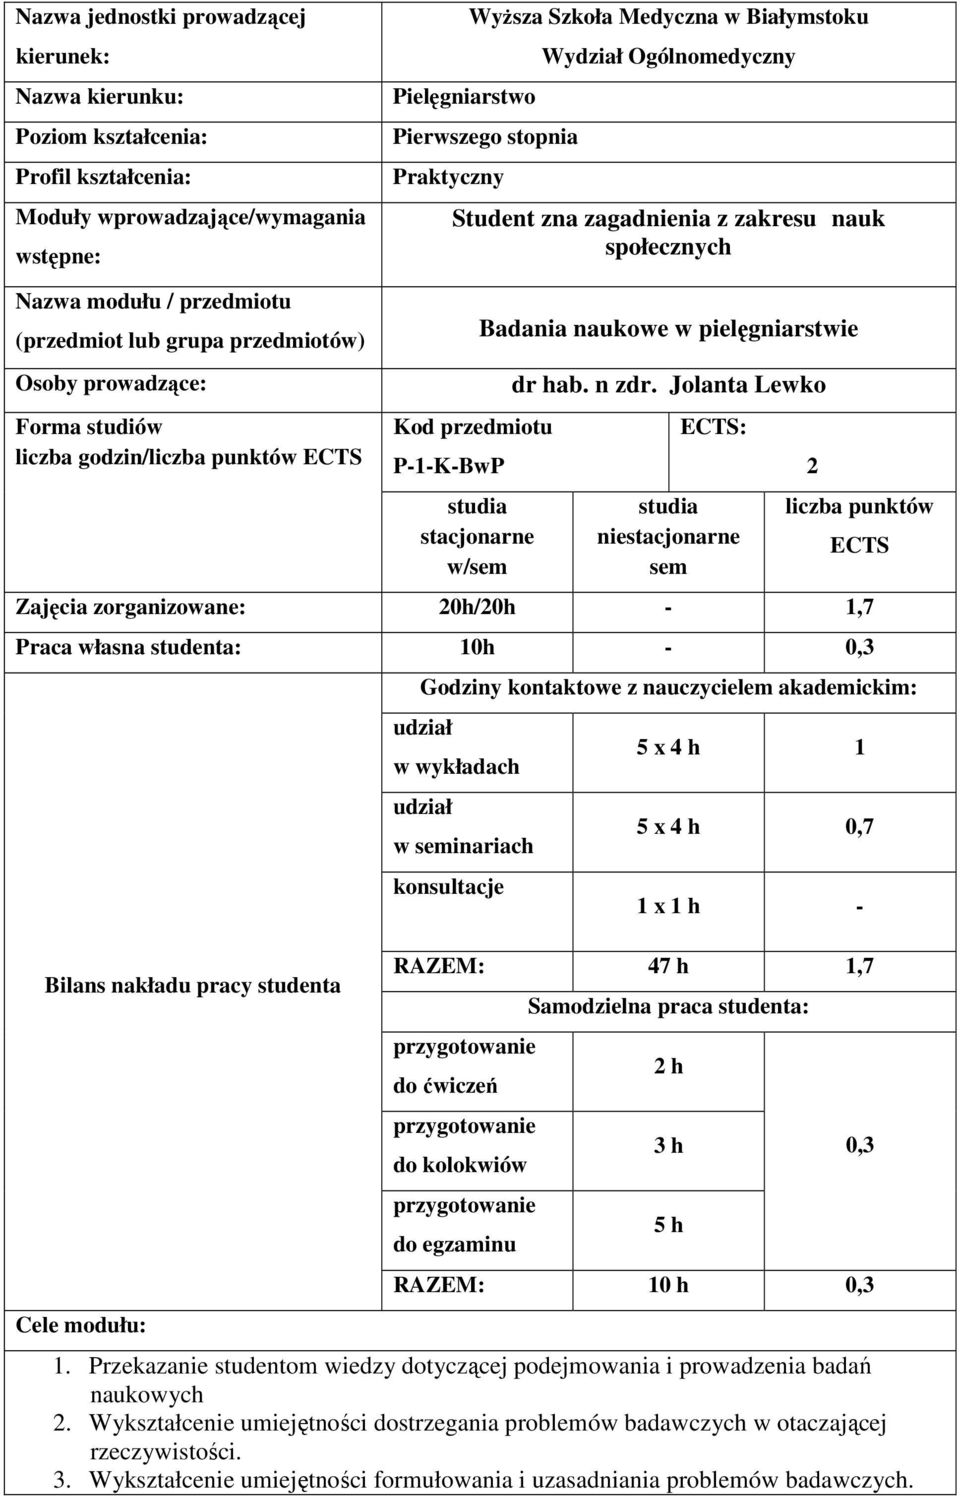 godzin/liczba punktów ECTS Kod przedmiotu P-1-K-BwP studia stacjonarne w/sem Badania naukowe w pielęgniarstwie dr hab. n zdr.